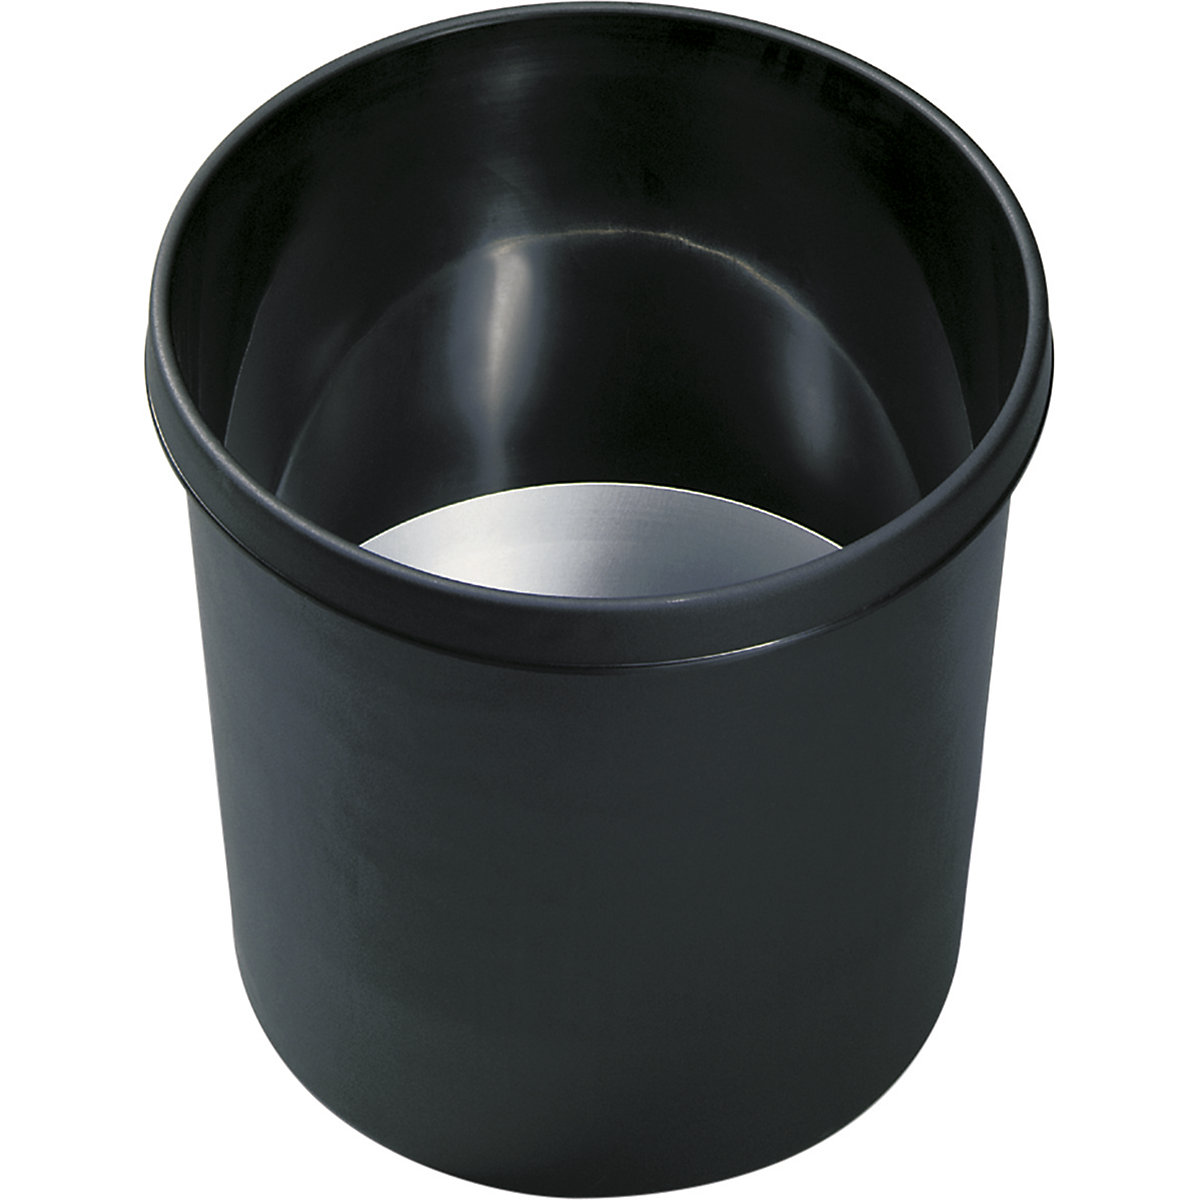 Sigurnosna kanta za papir – helit, volumen 18 l, VxØ 310 x 295 mm, u crnoj boji, s aluminijskim umetkom, pak. 5 kom.-2